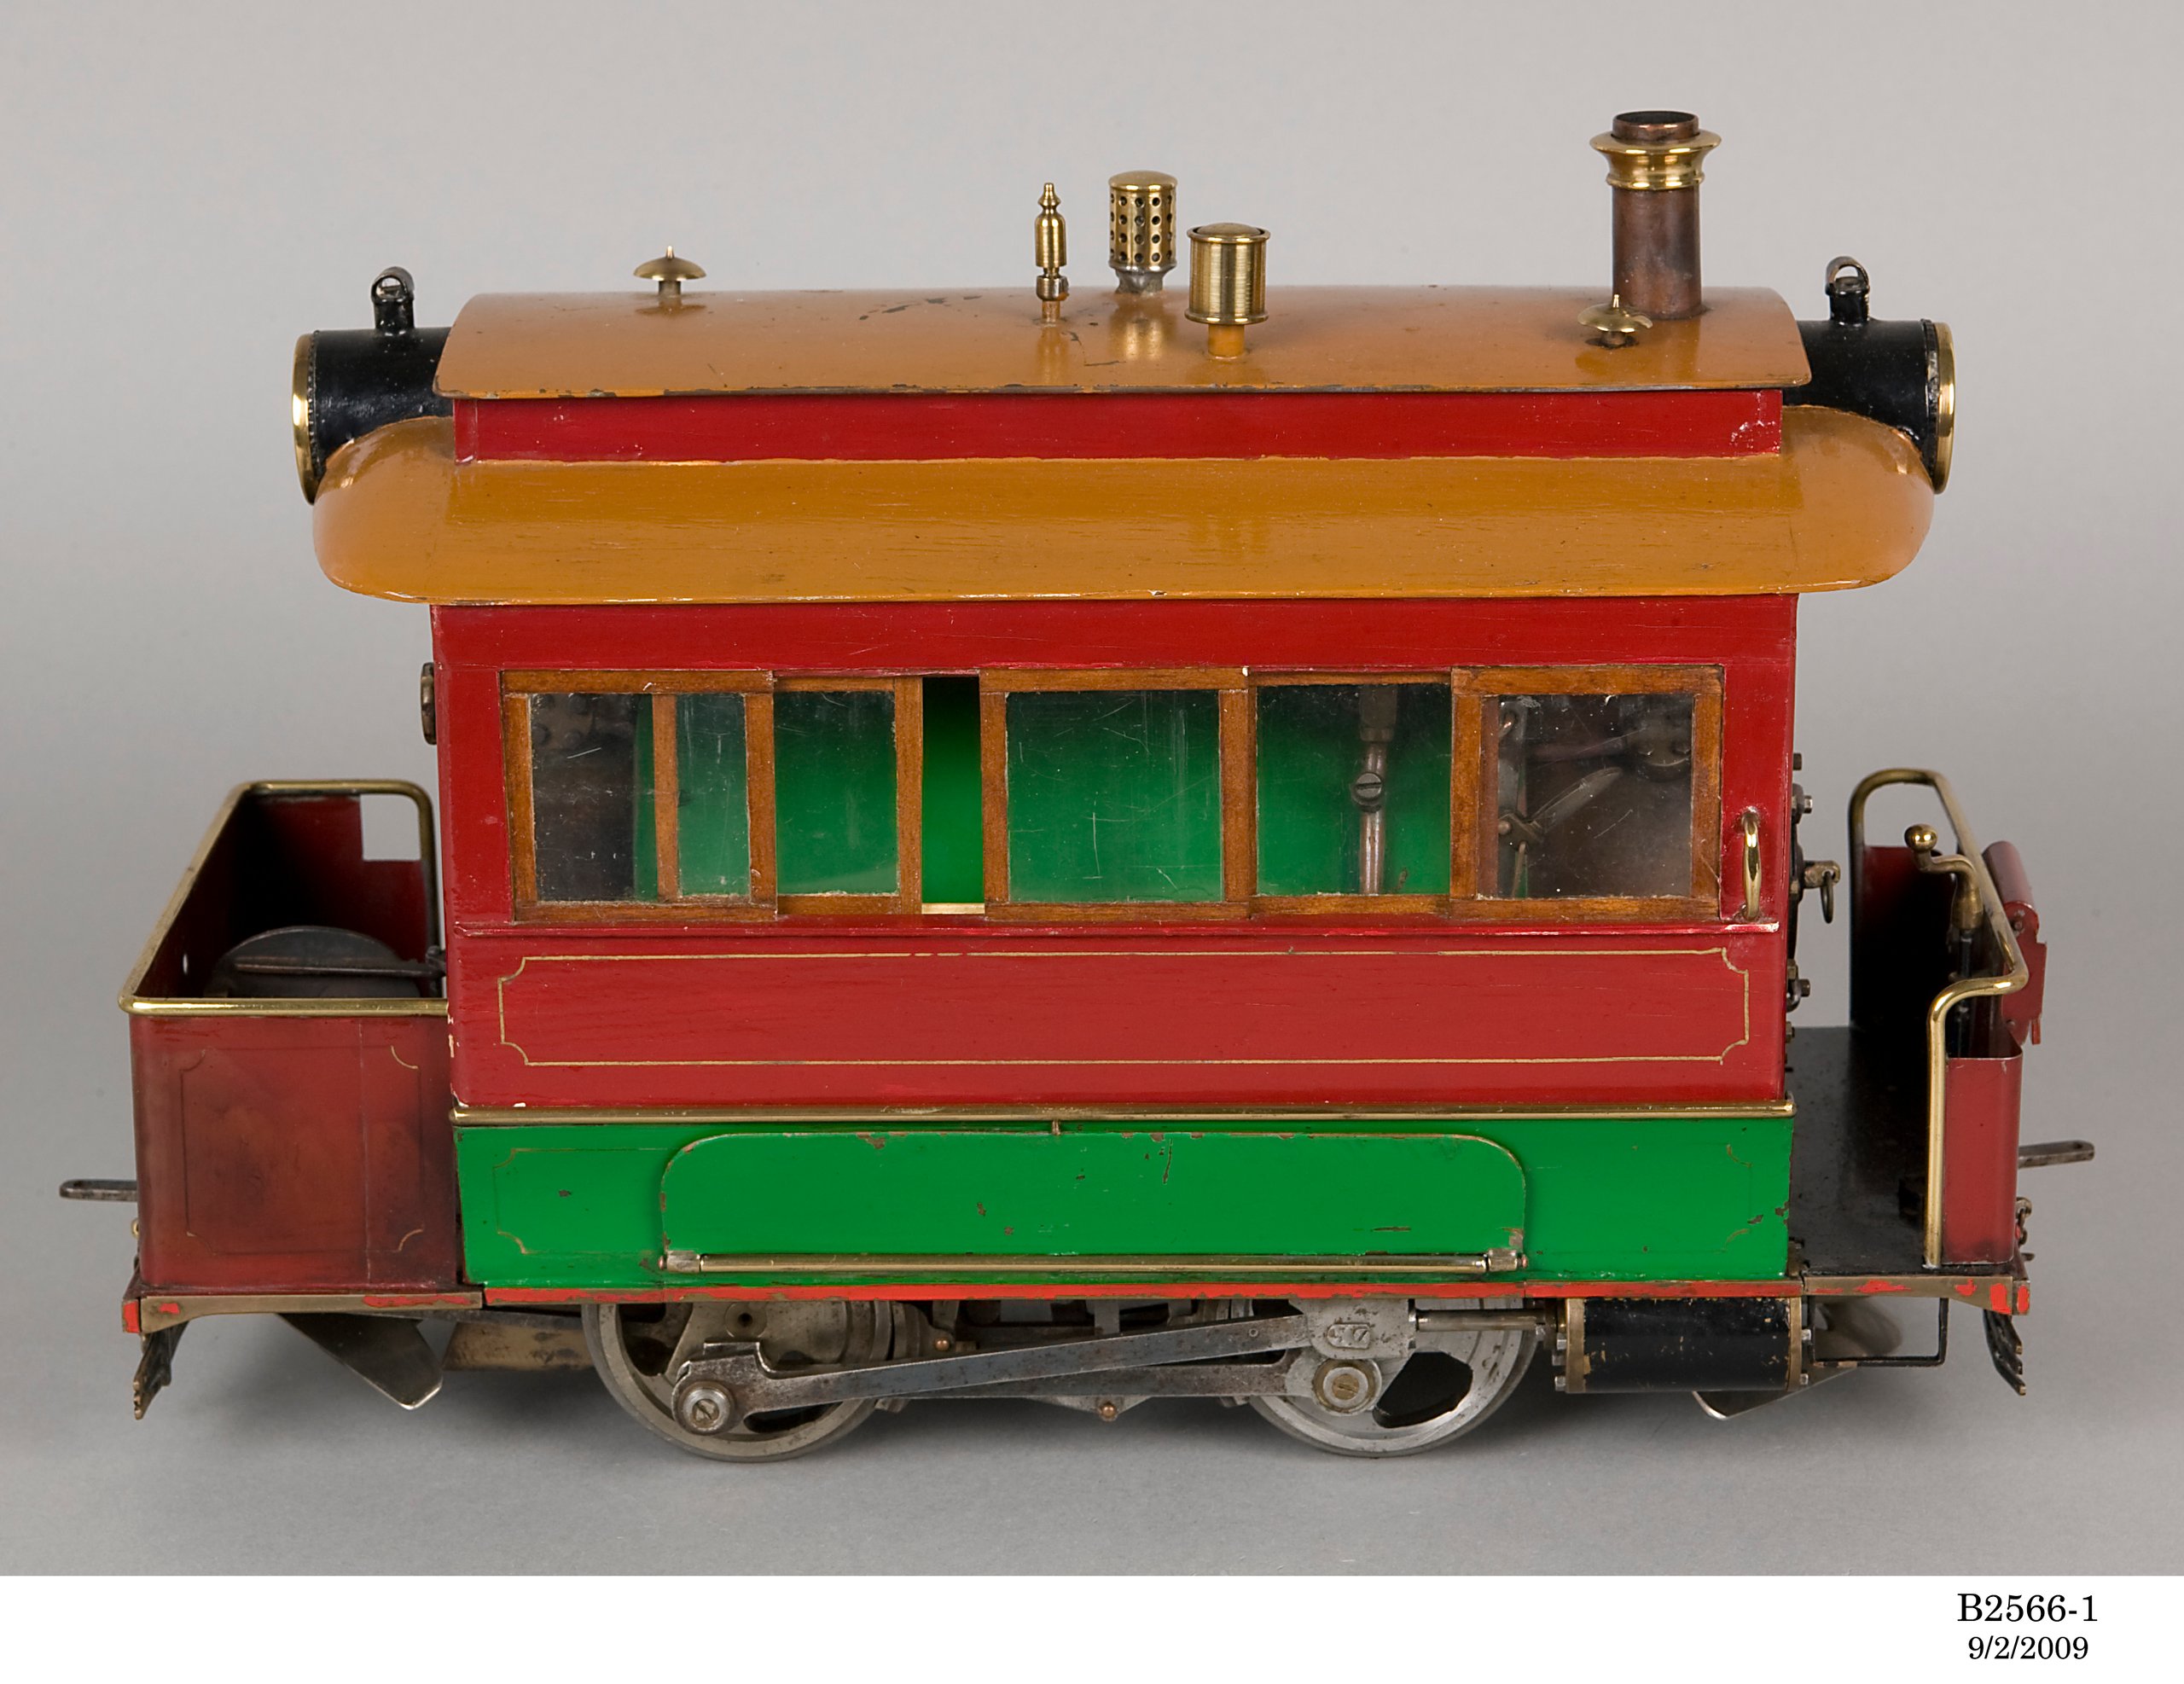 Model of Sydney steam tram and cars by Bob Cutcher